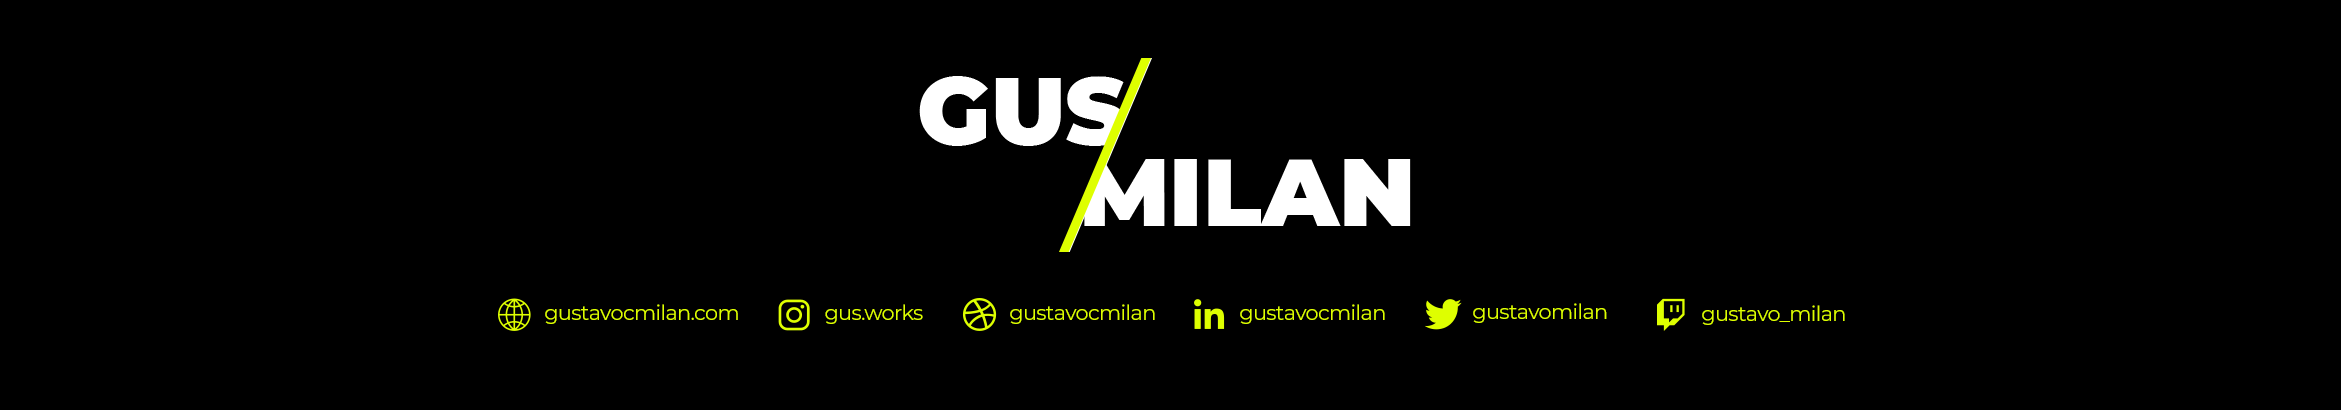 Profil-Banner von Gustavo da Costa Milan